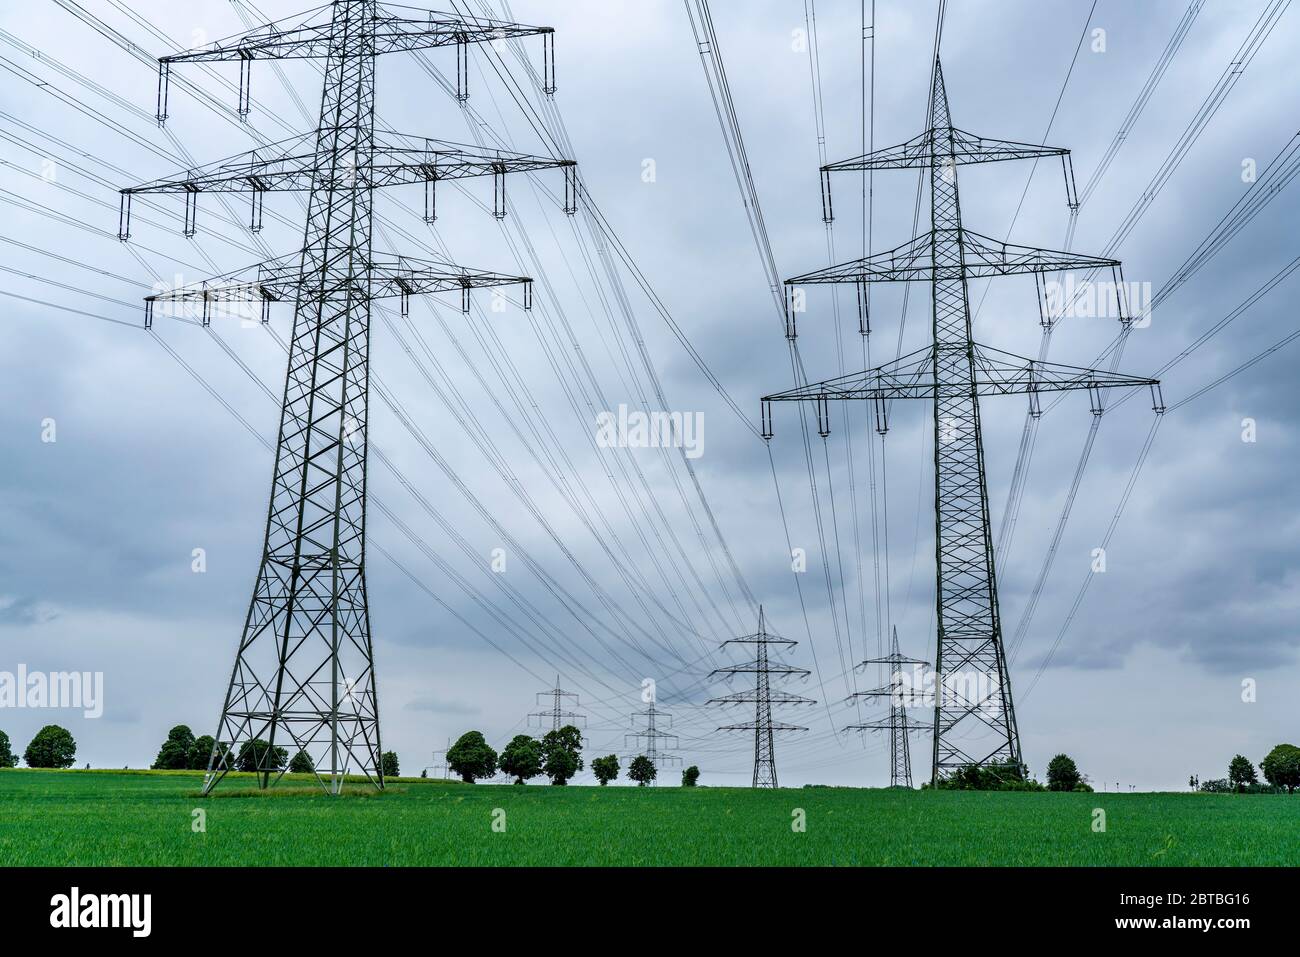 Lignes électriques, réseau électrique à très haute tension, 380 kilovolt, transporte l'électricité produite dans les grandes centrales électriques vers les régions, vers une statio de transformateur Banque D'Images